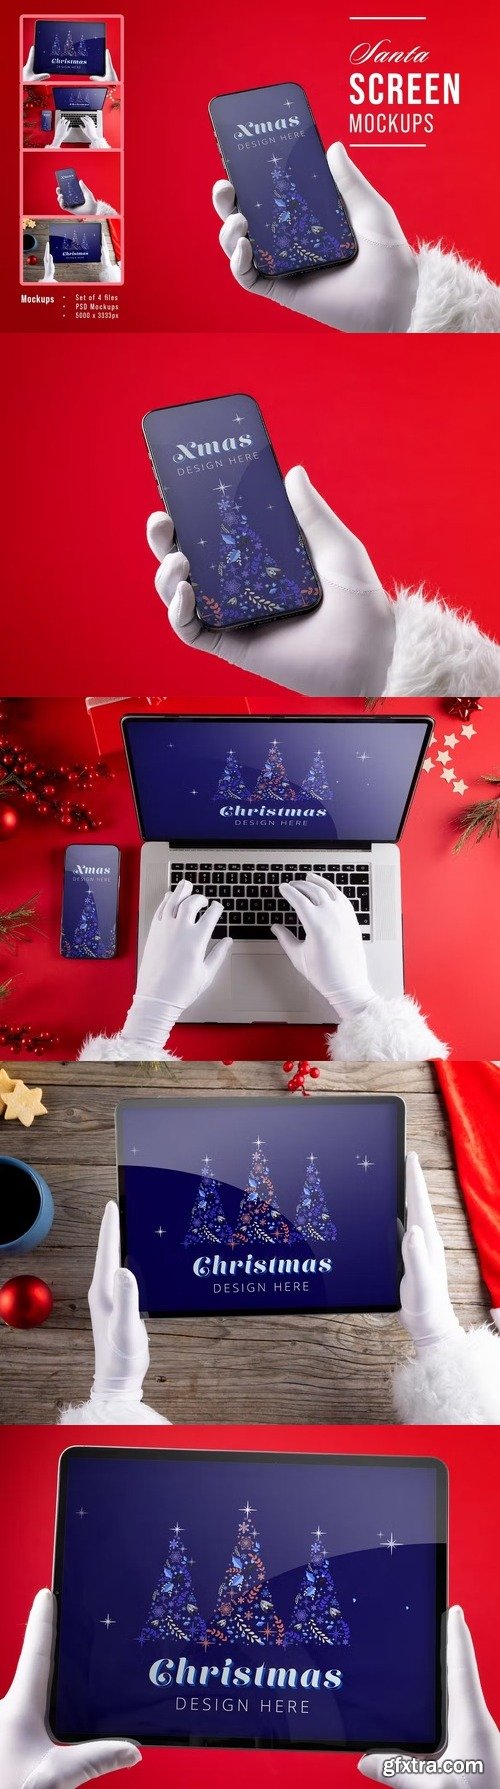 Christmas screens mockup